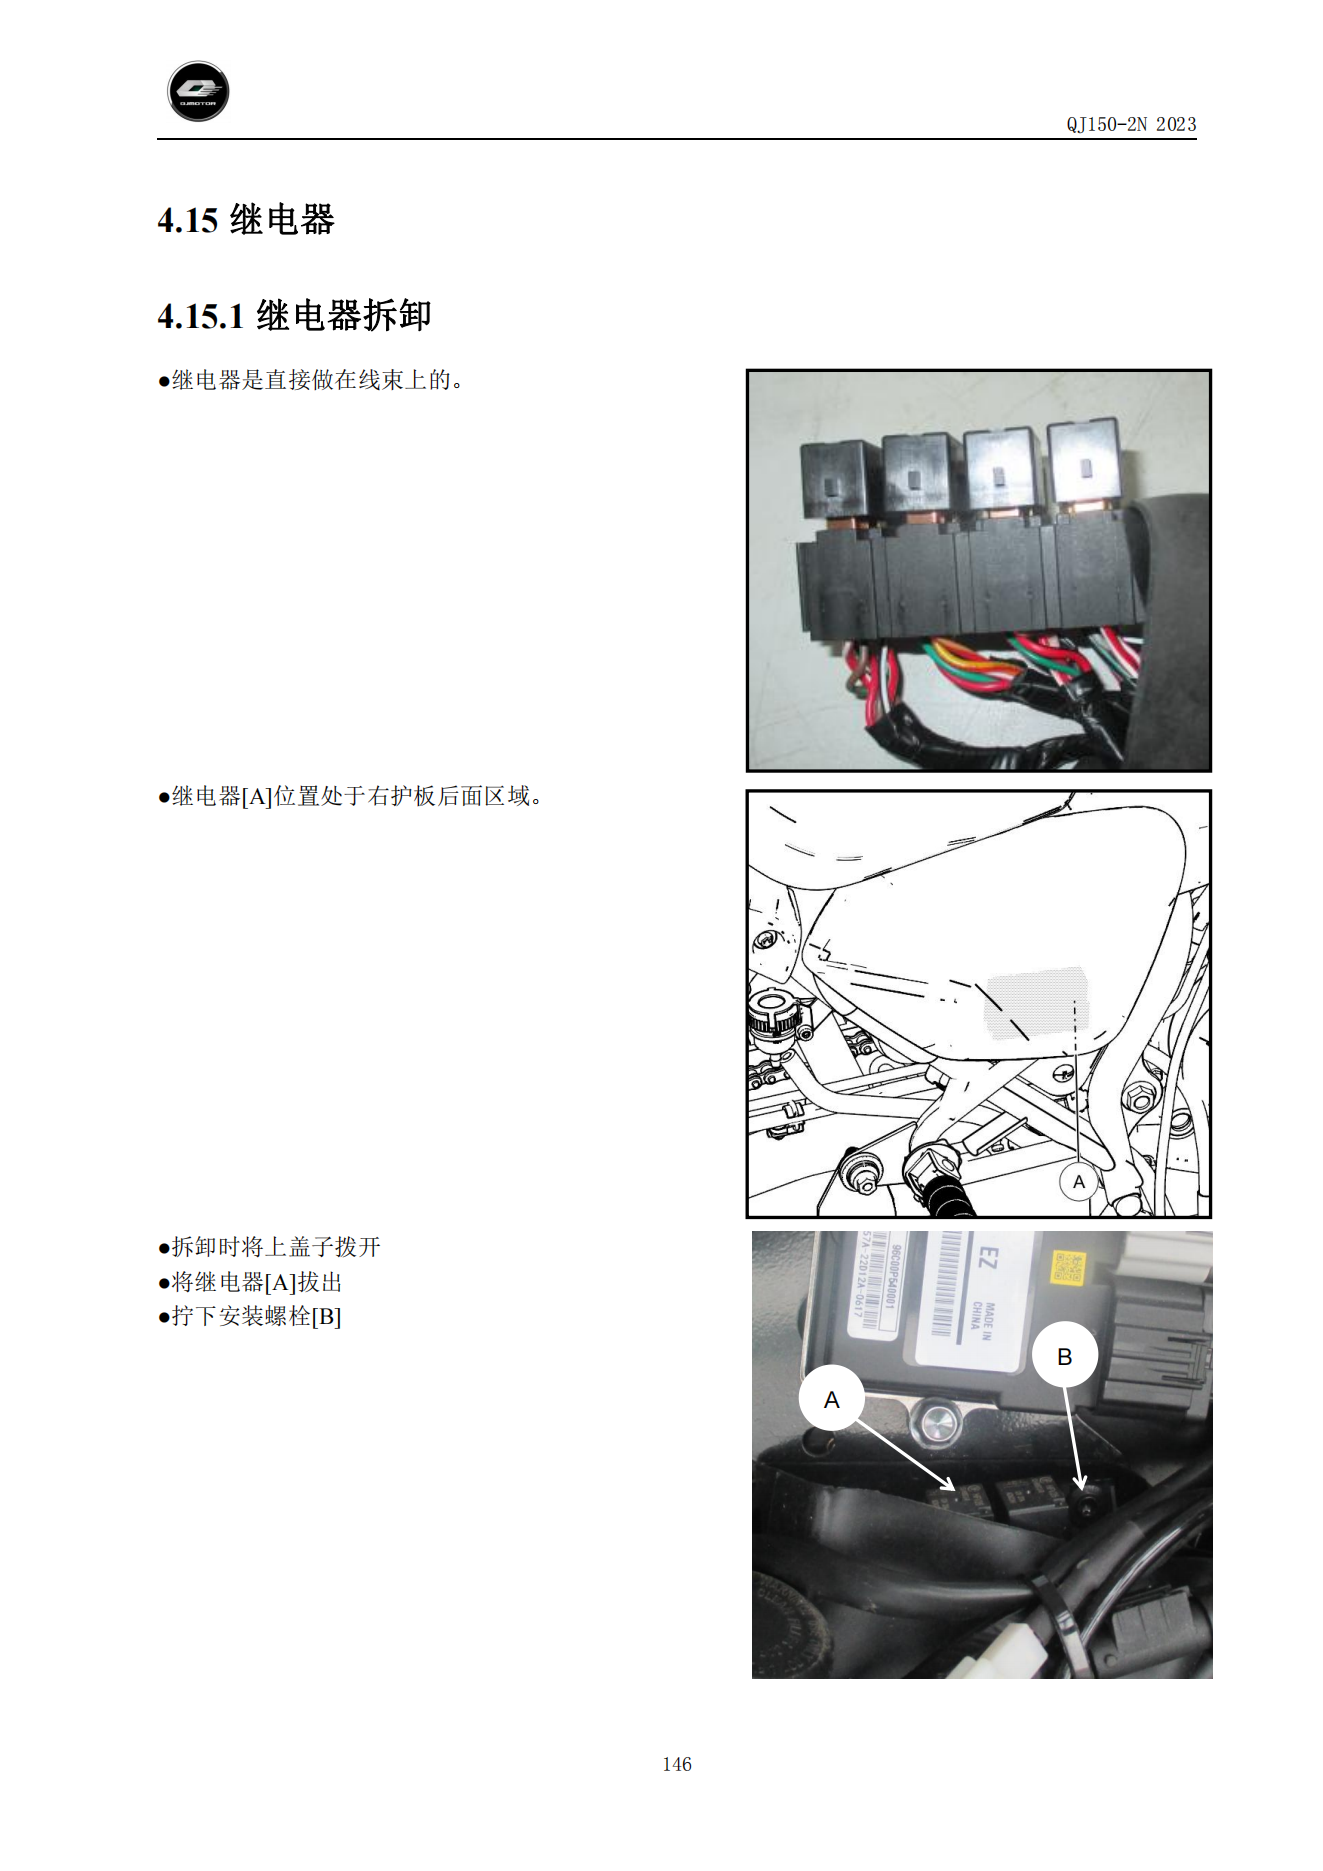 原版中文钱江闪150链条款QJ150-2N维修手册插图4